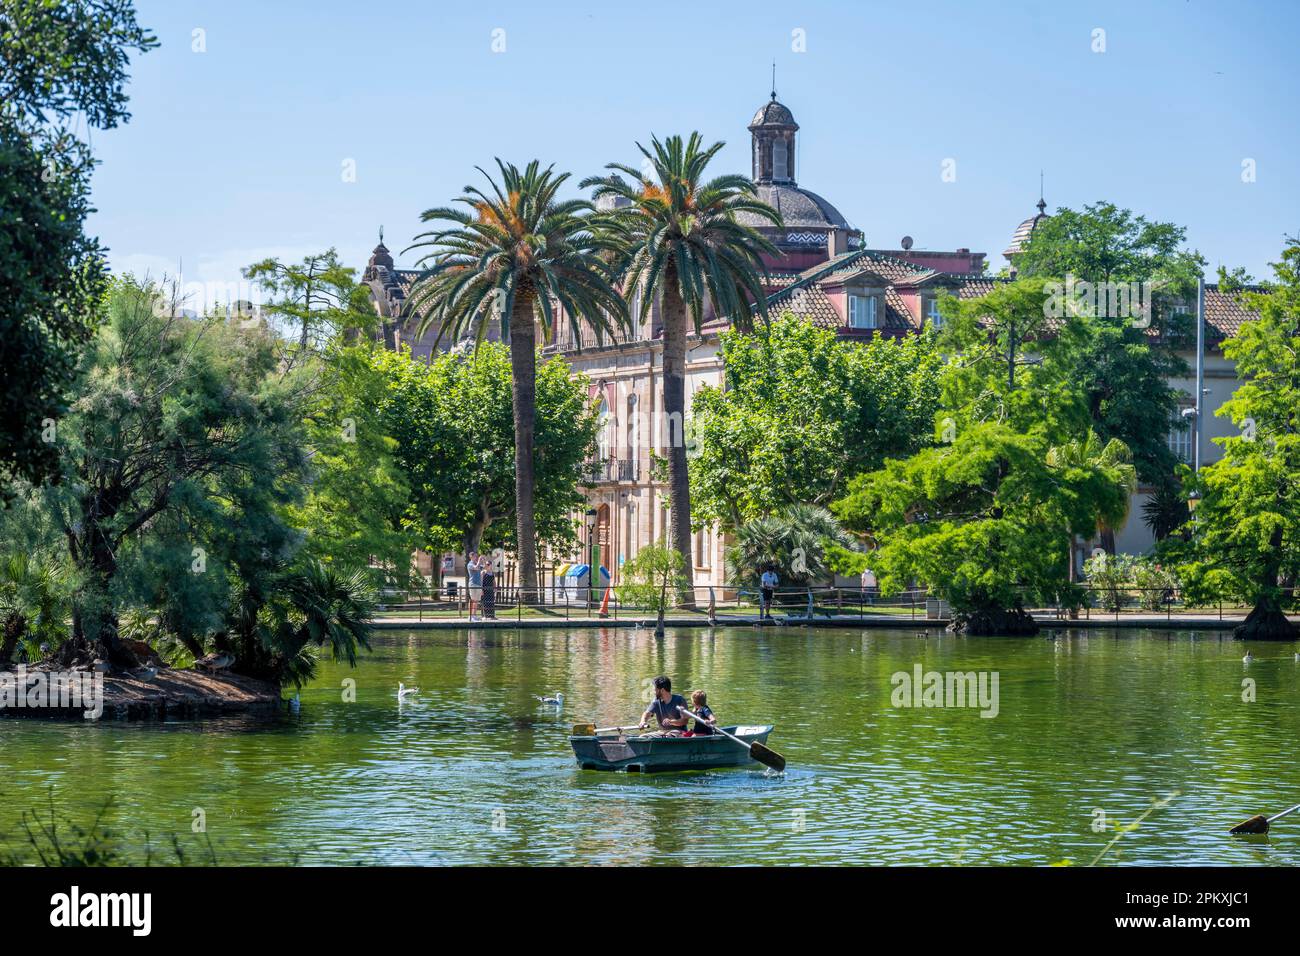 Bateau à rames dans un lac, parc municipal, Parc de la Ciutadella, Barcelone, Catalogne, Espagne Banque D'Images